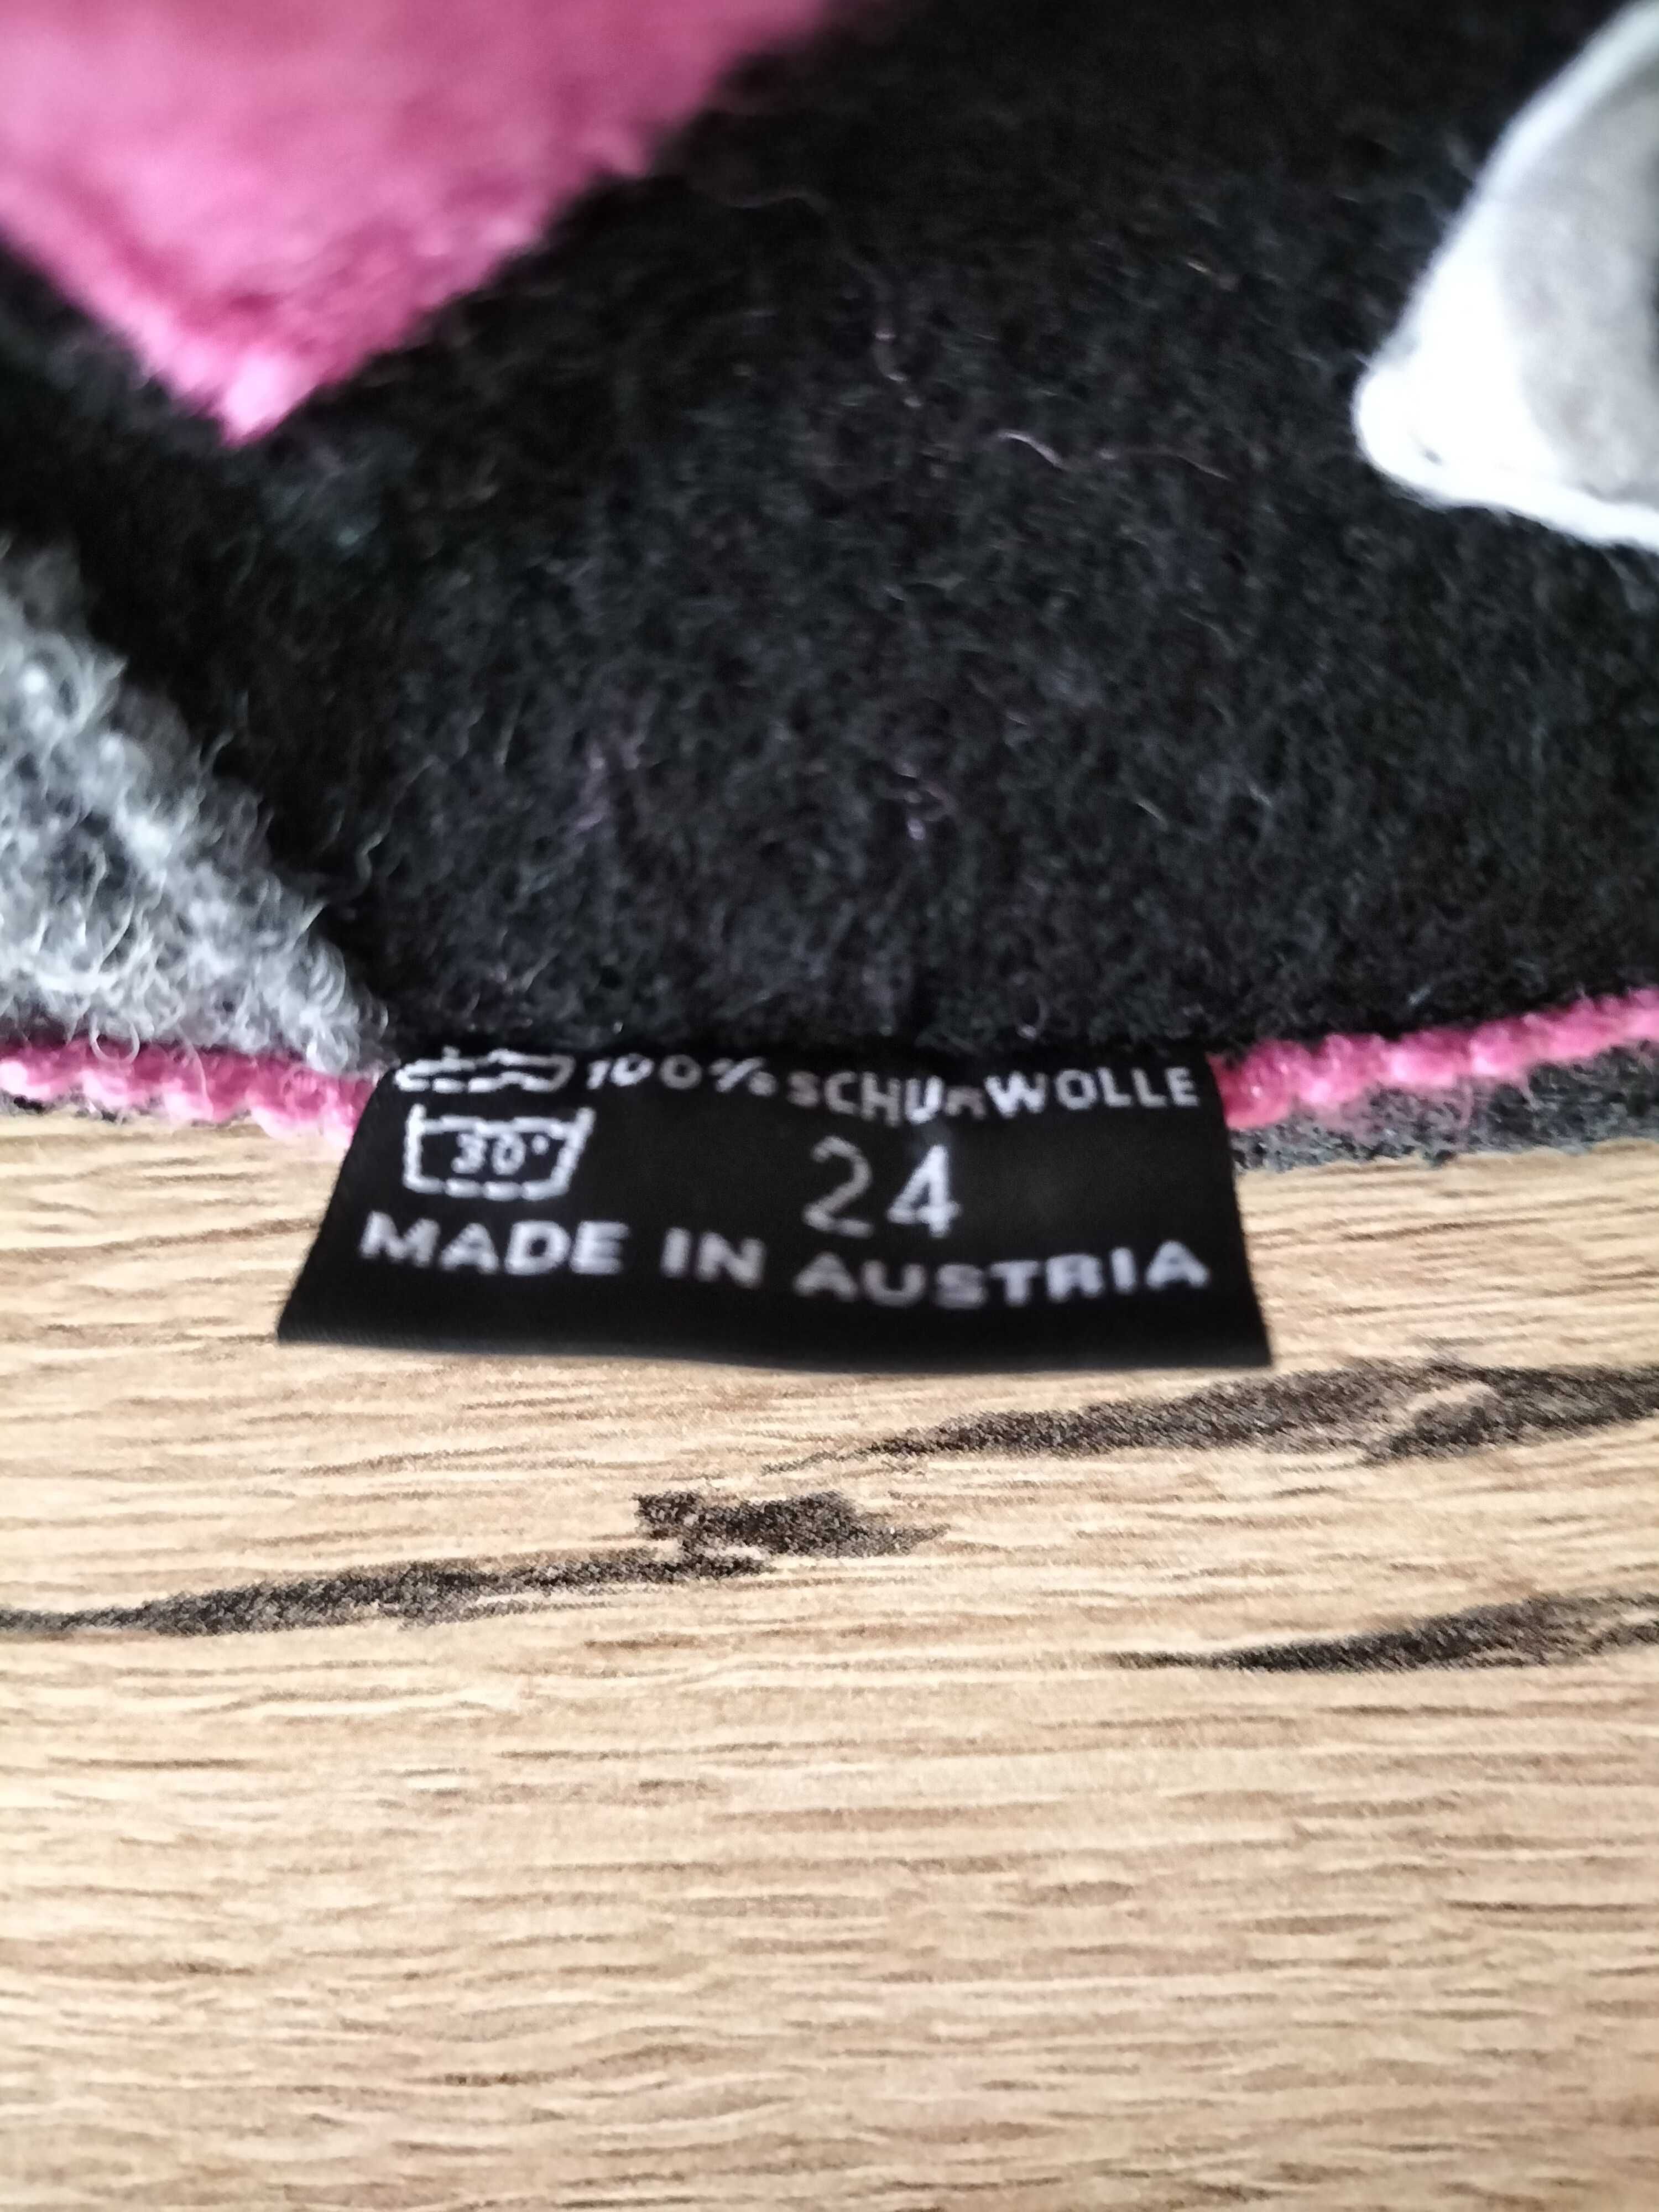 Incaltaminte de interior din lana fiarta pentru copii. Marimea 24